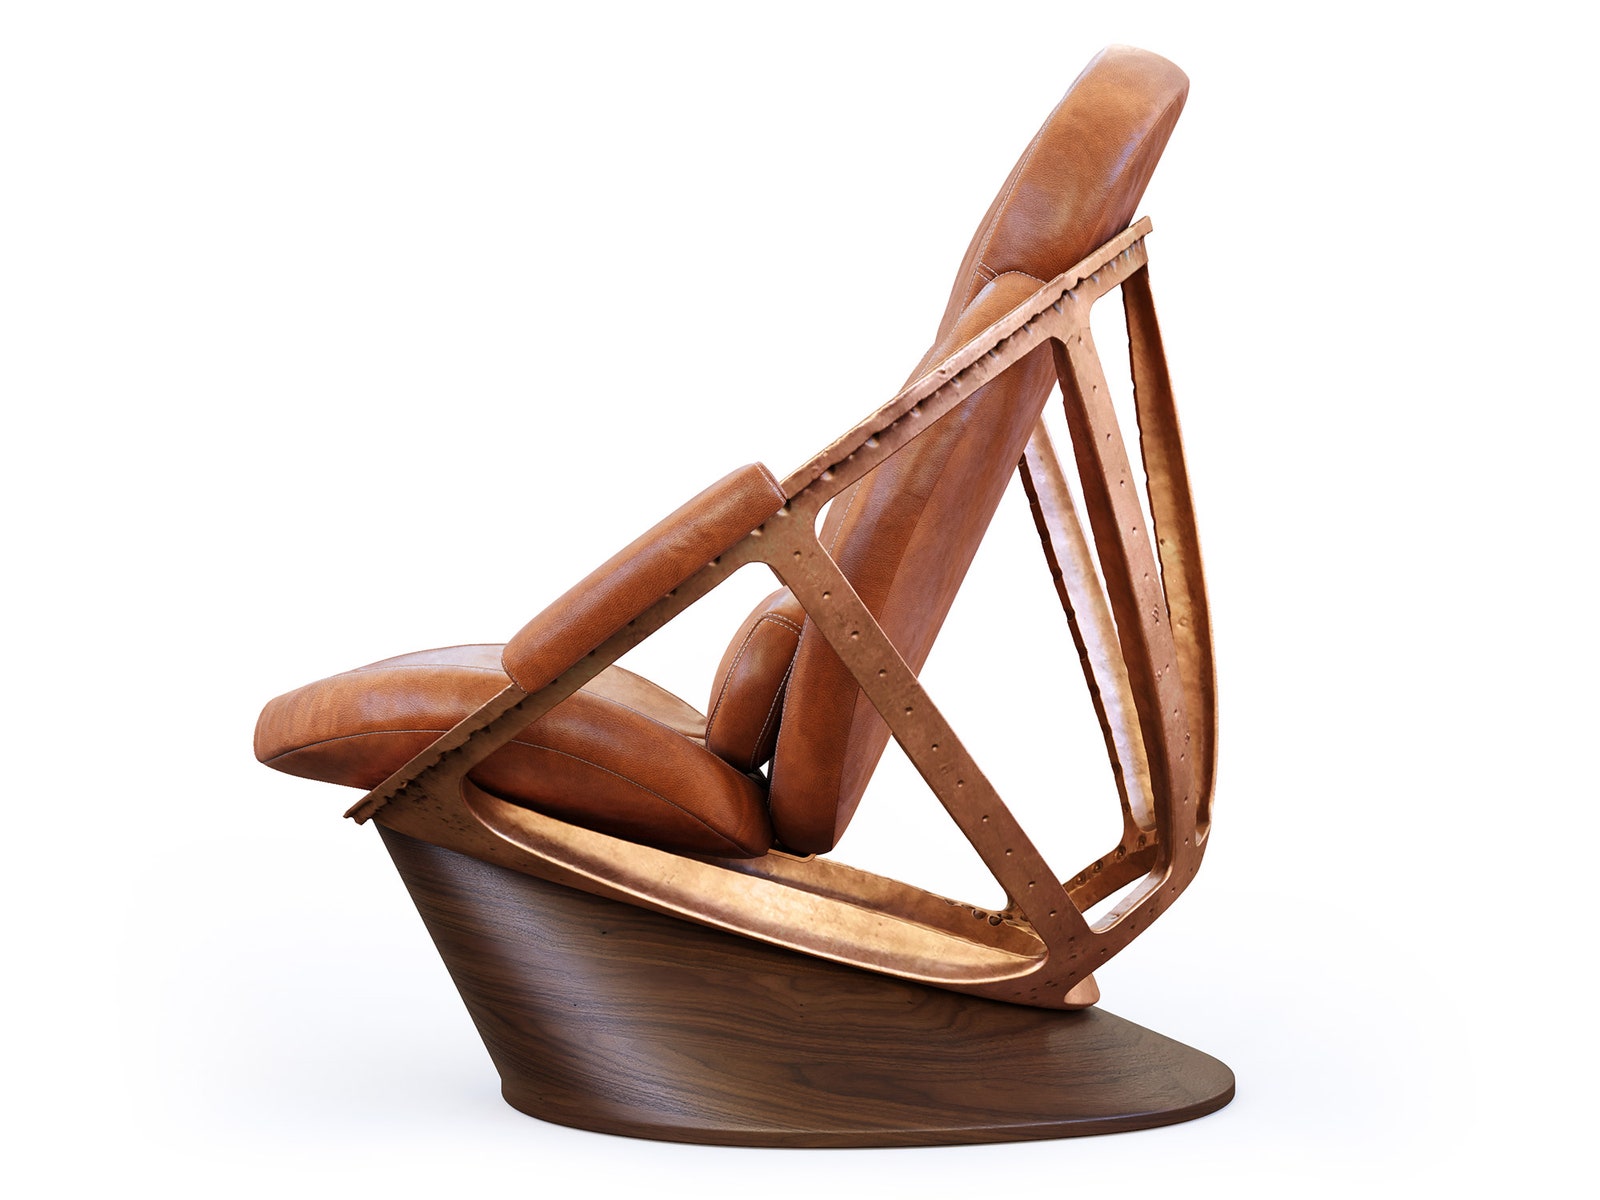 Дизайн кресла Legchatov134 от студии RUSKY и предметного дизайнера Ильи Легчатова